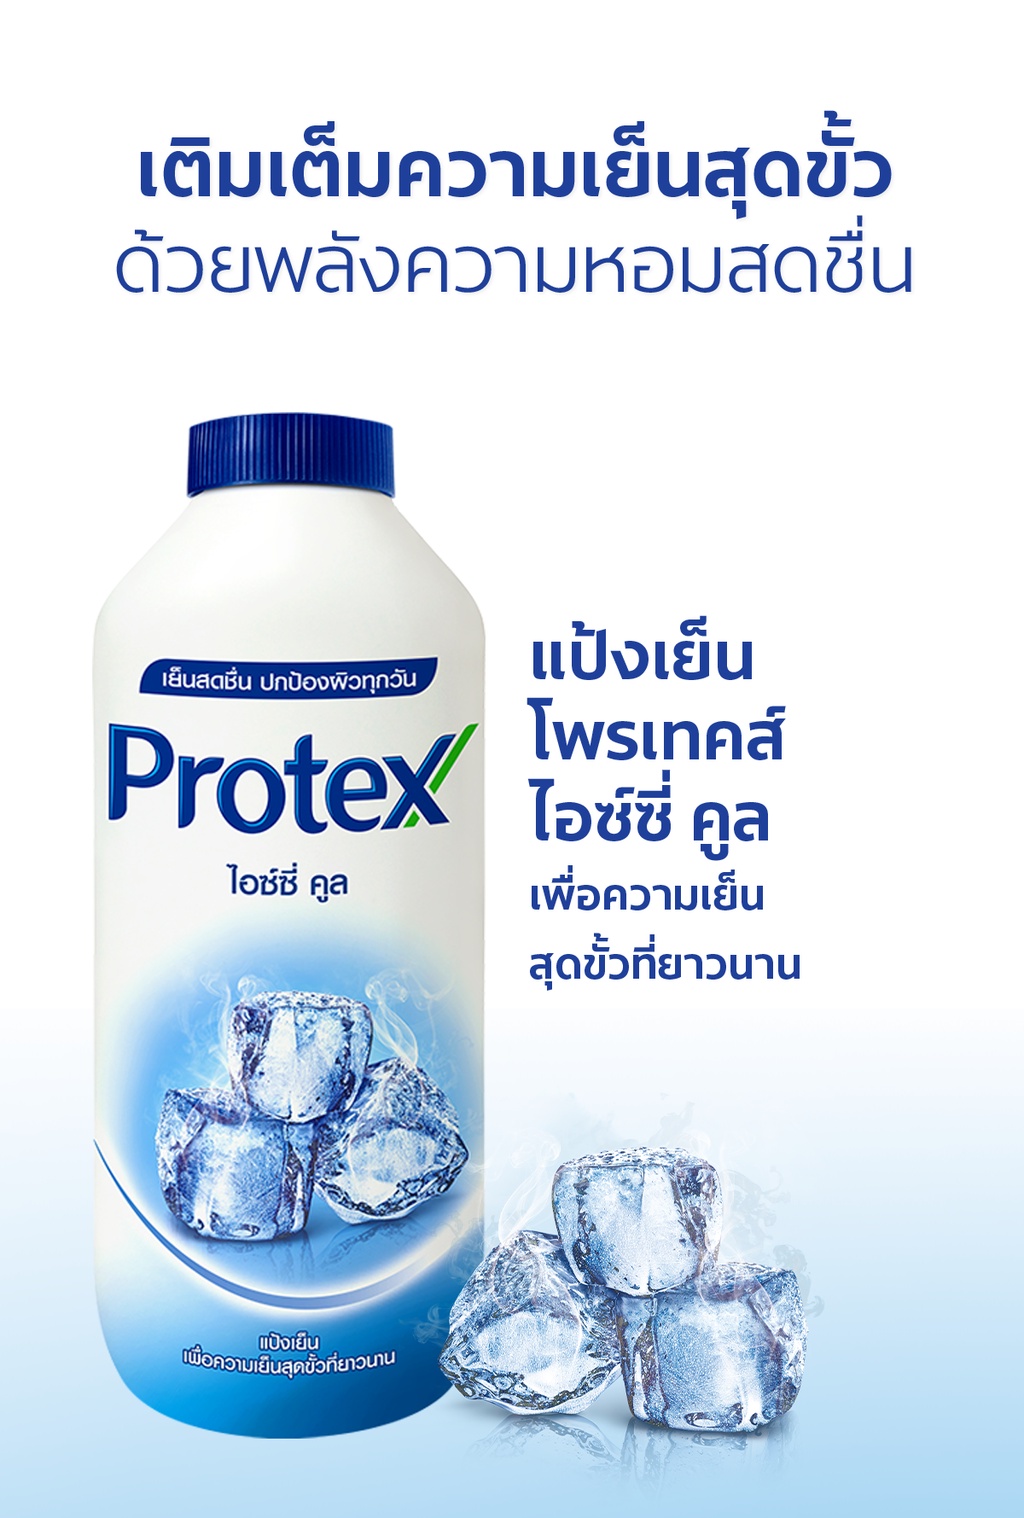 มุมมองเพิ่มเติมของสินค้า Protex แป้งเย็น โพรเทคส์ ไอซ์ซี่ คูล 280 ก. รวม 2 ขวด PROTEX Talcum Icy Cool 280g total 2 bottles